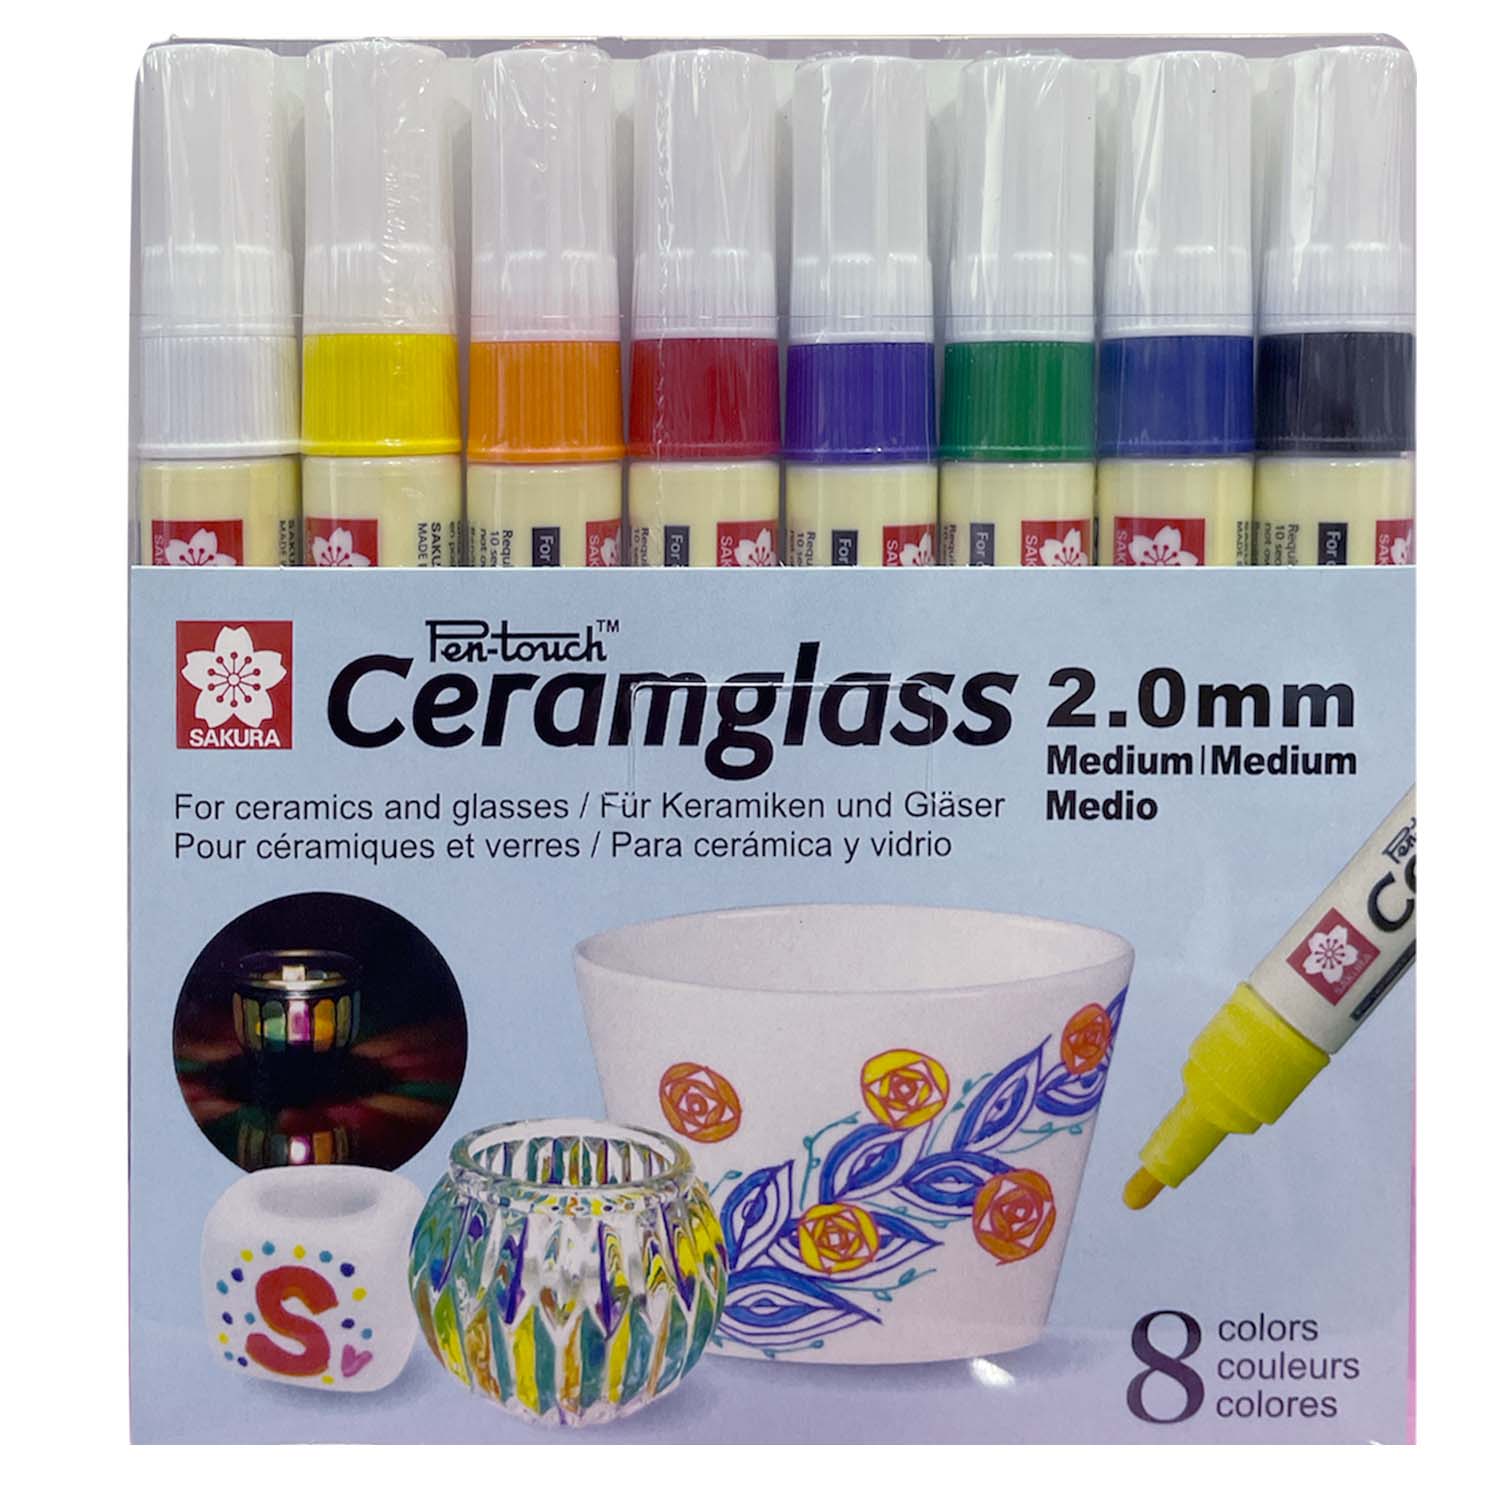 Marcador Para Cerámica y Vidrio Ceramglass Sakura 8 Colores